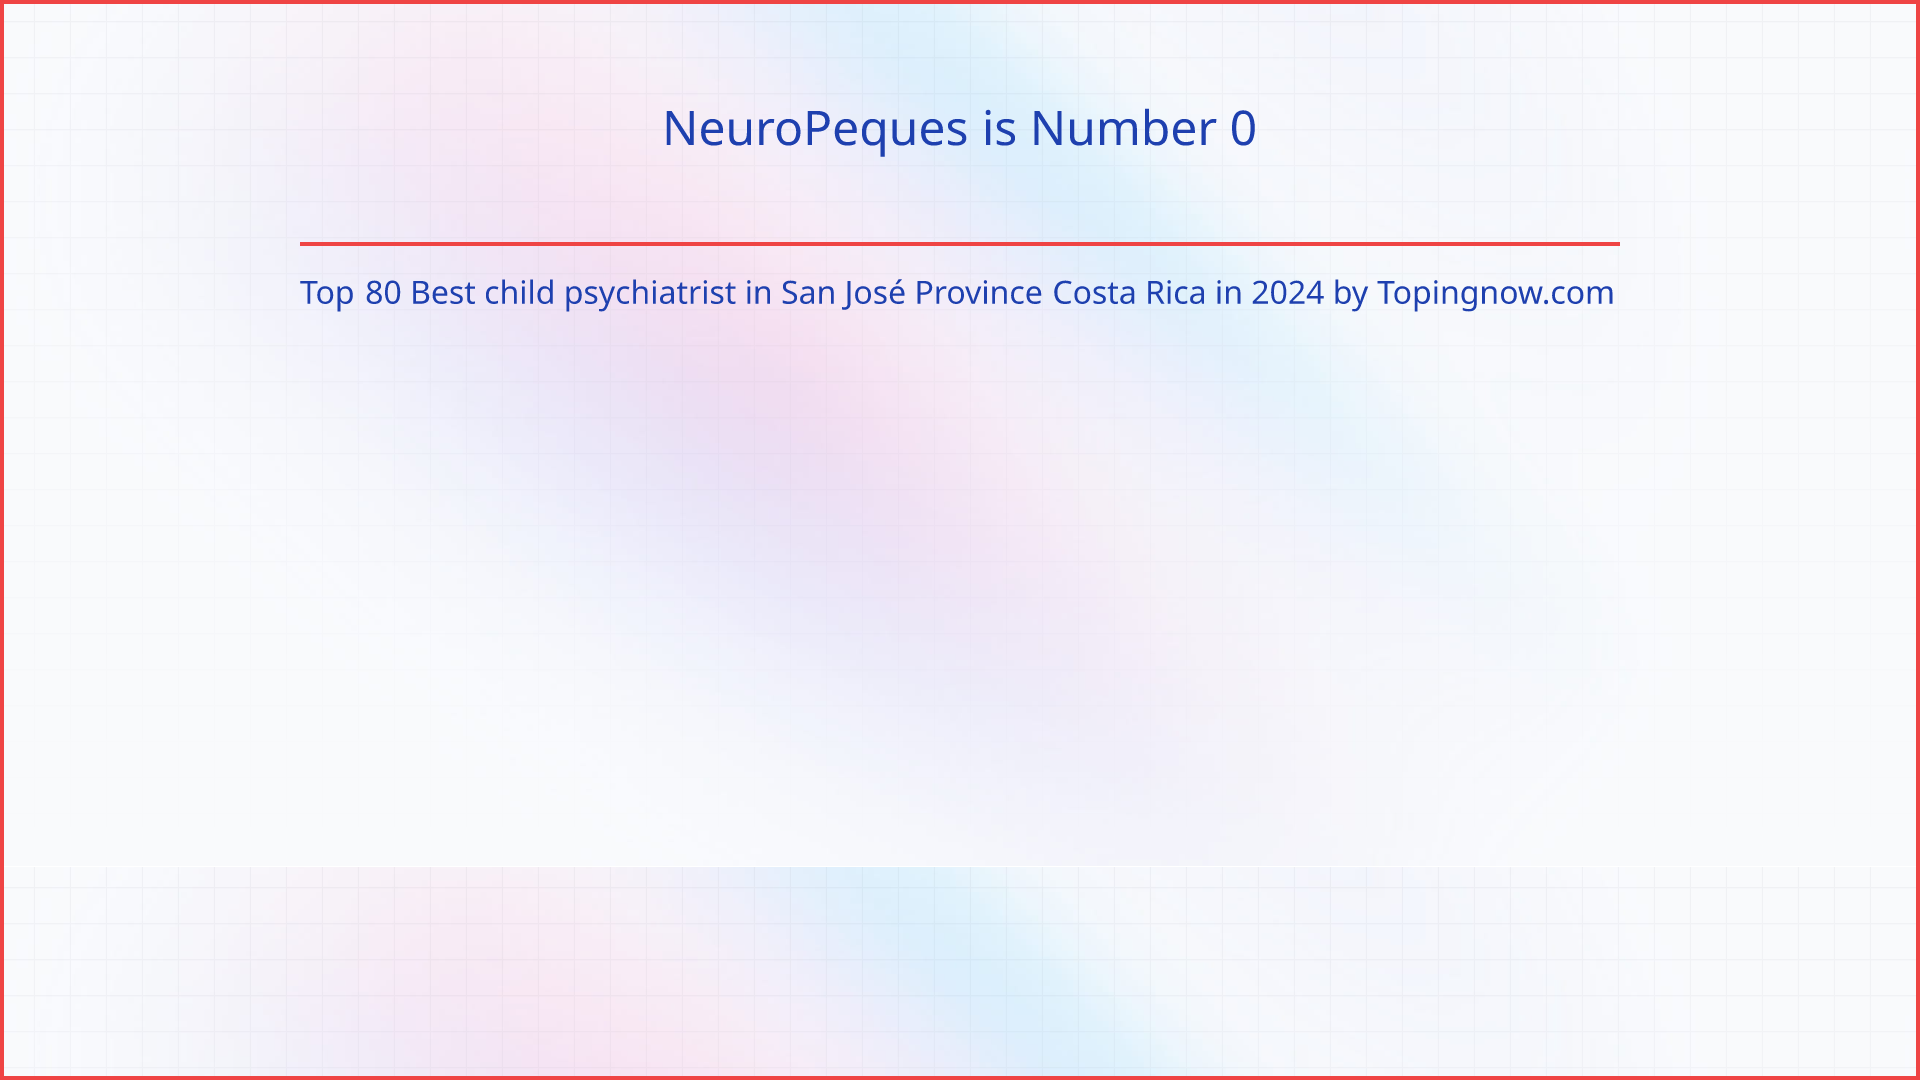 NeuroPeques: Top 80 Best child psychiatrist in San José Province Costa Rica in 2024